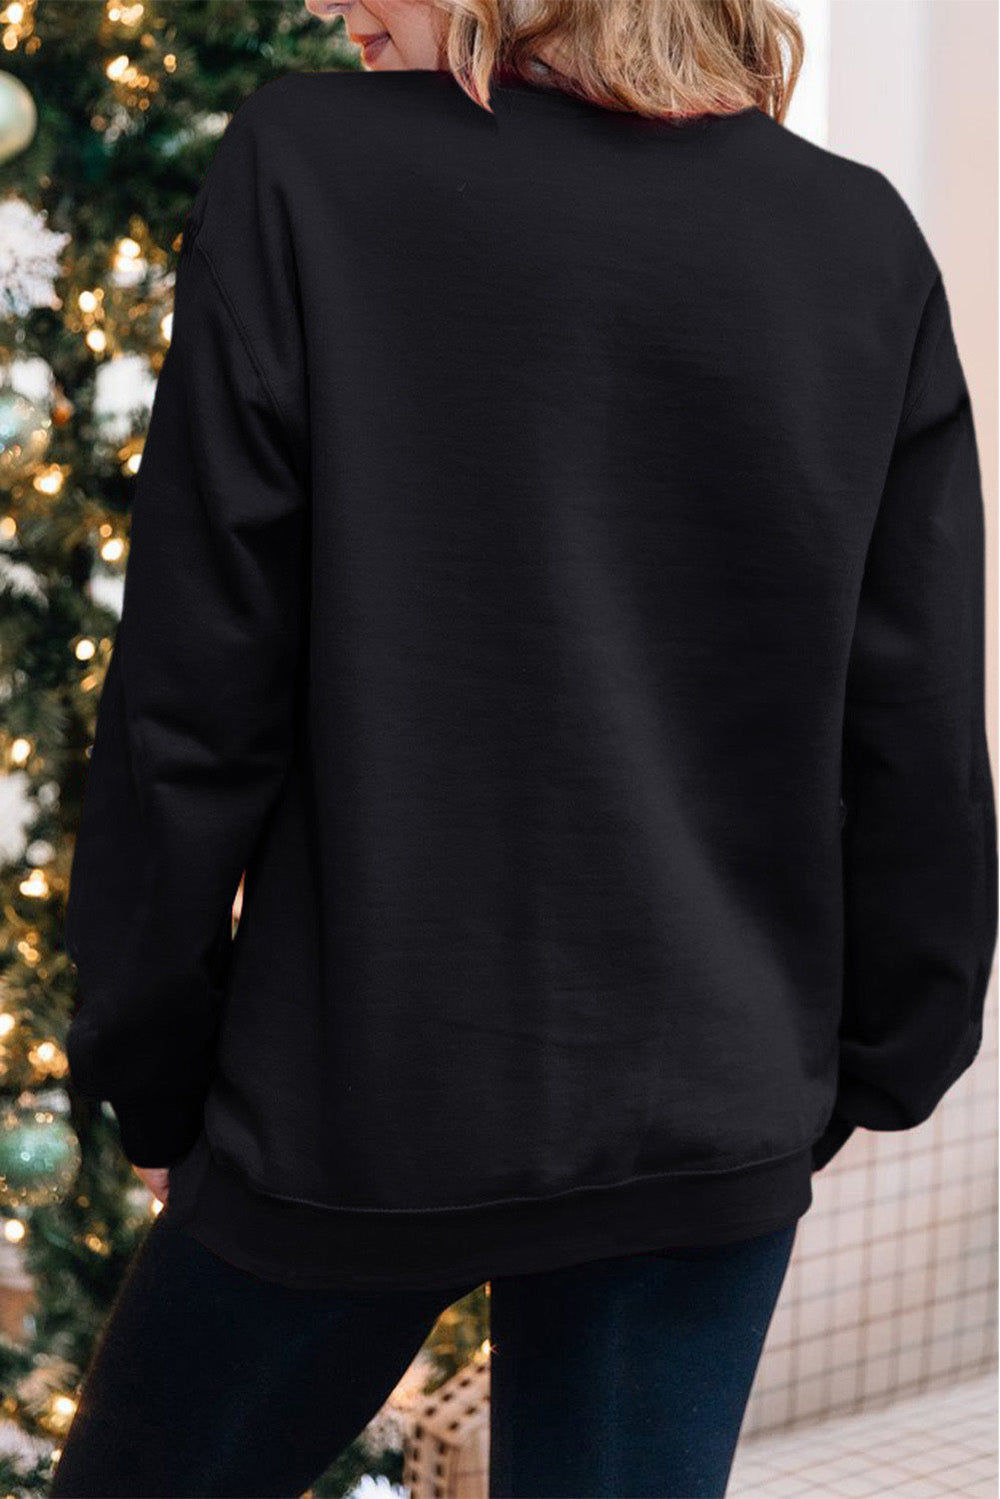 Black Merry Christmas Plaid Graphic Sweatshirt